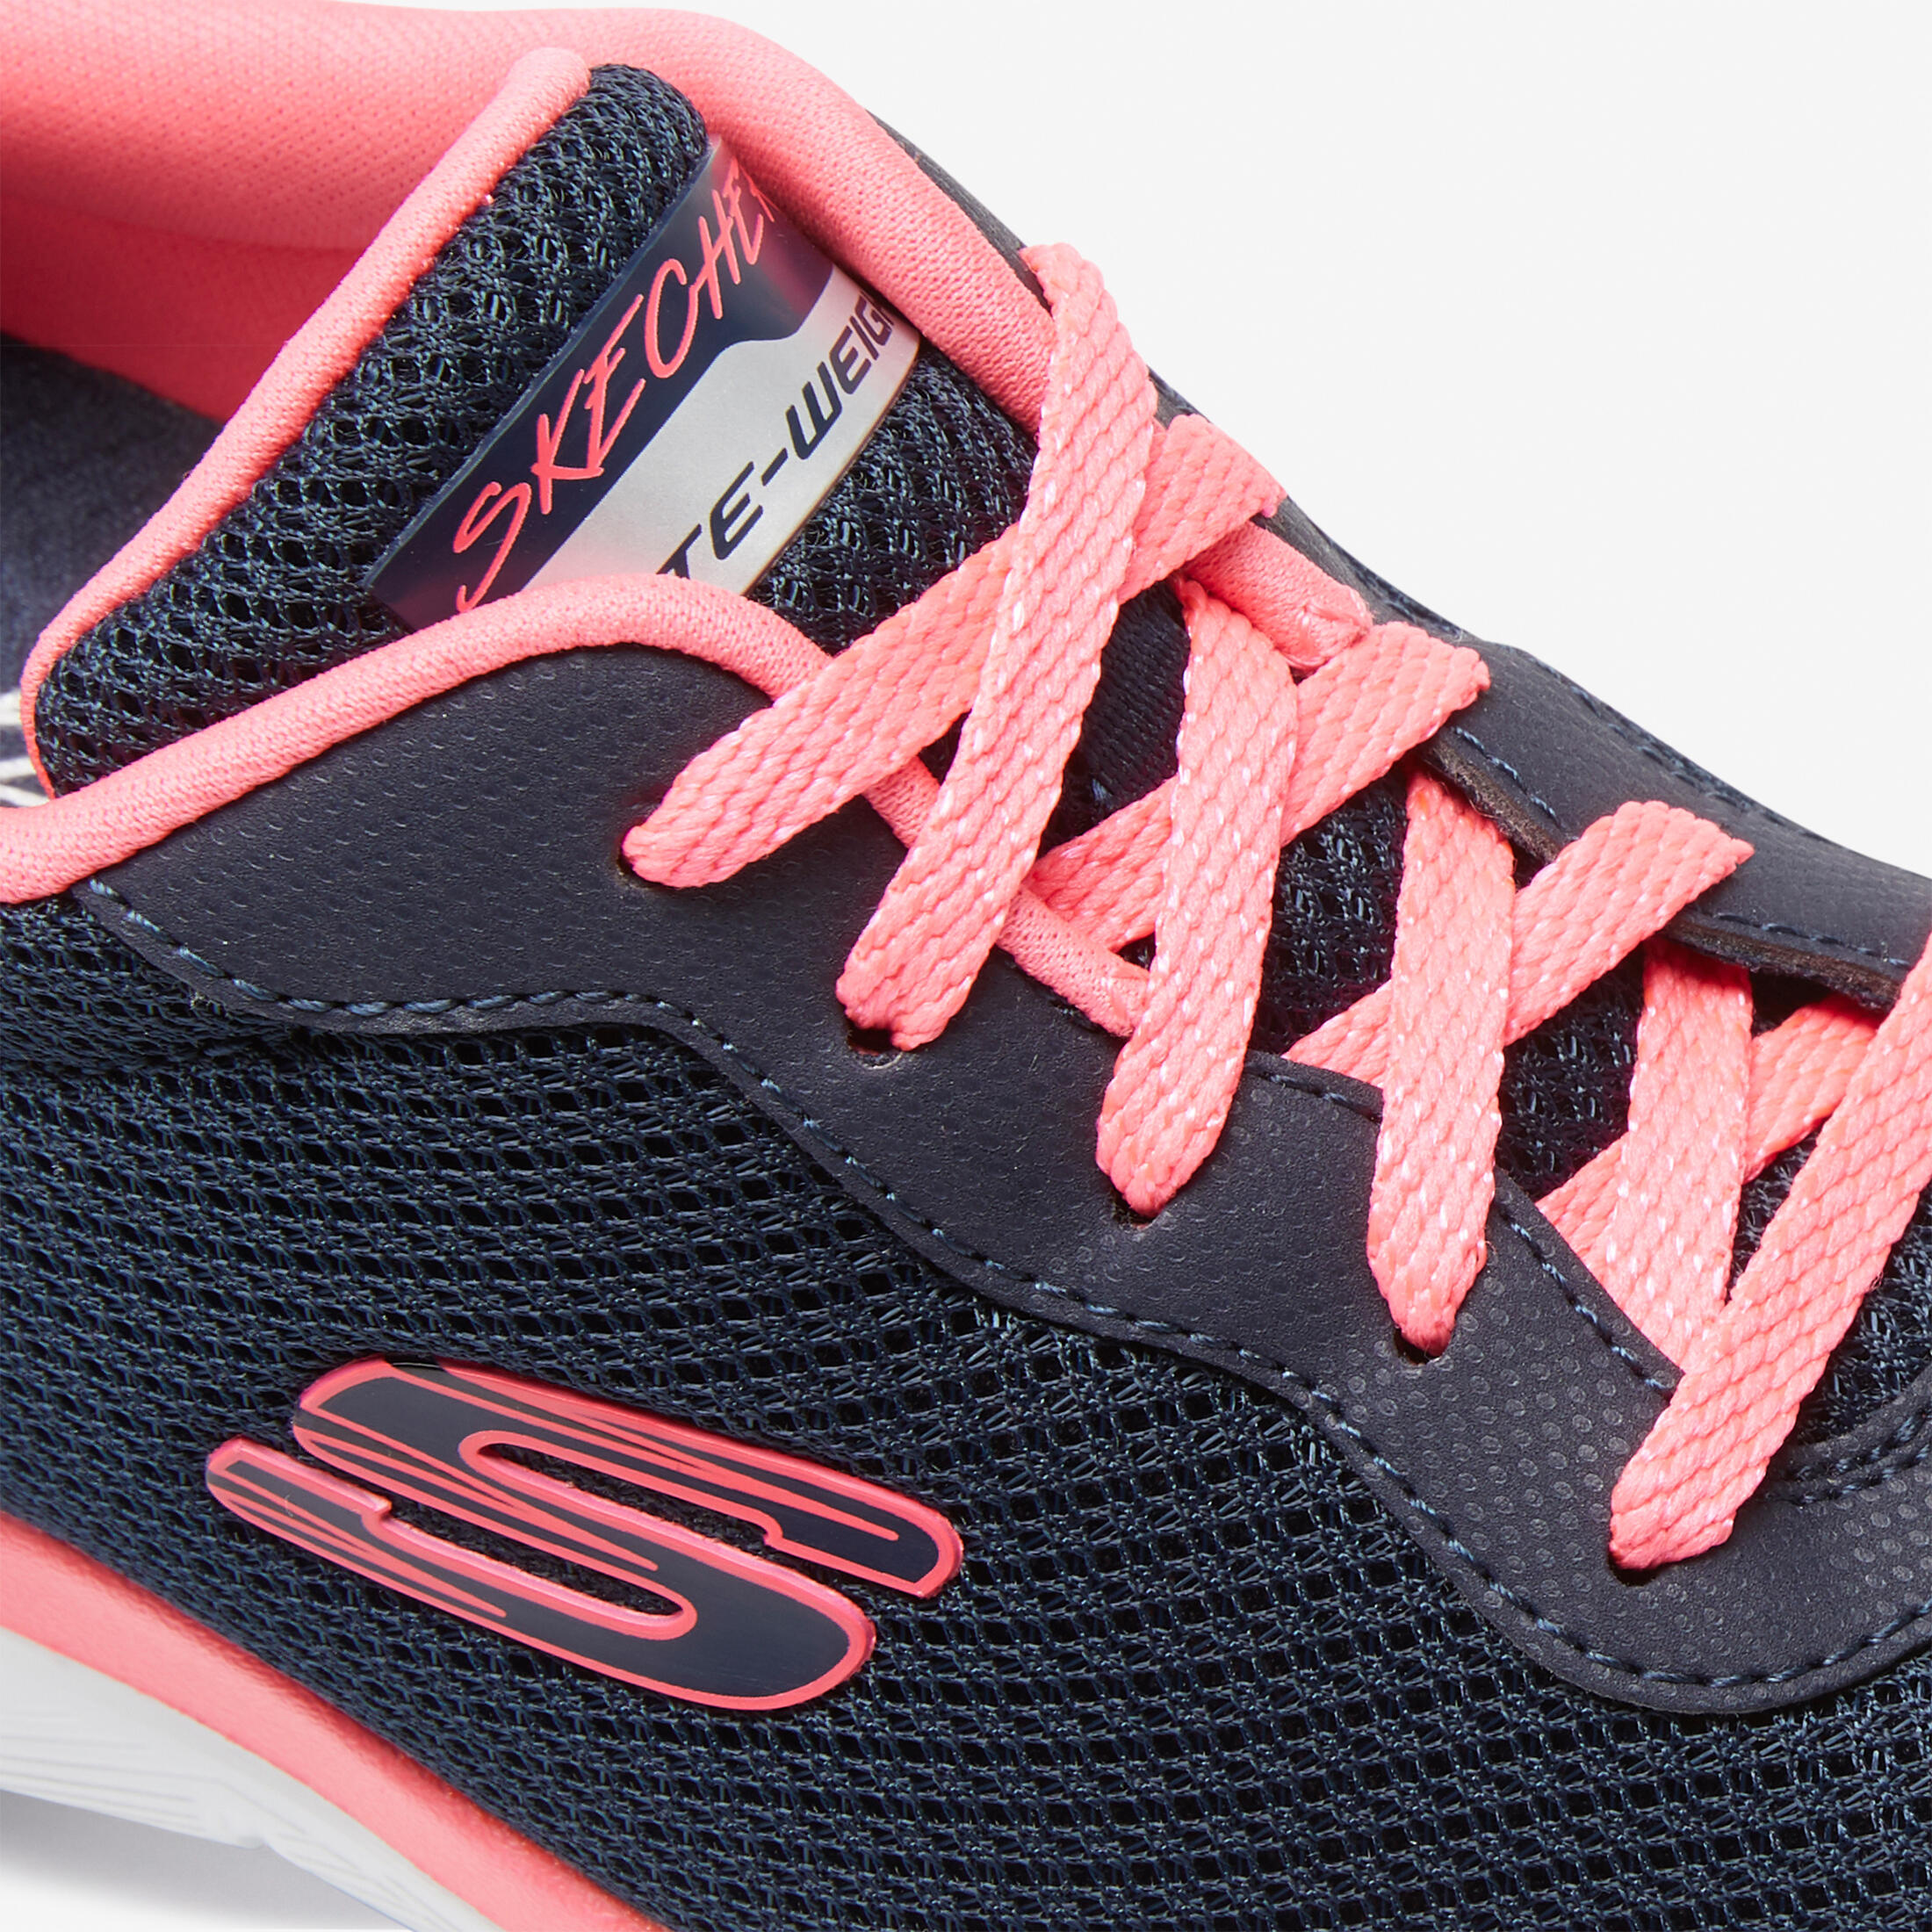 Flex Appeal Women's Fitness Walking Shoes - Blue/Pink 7/7